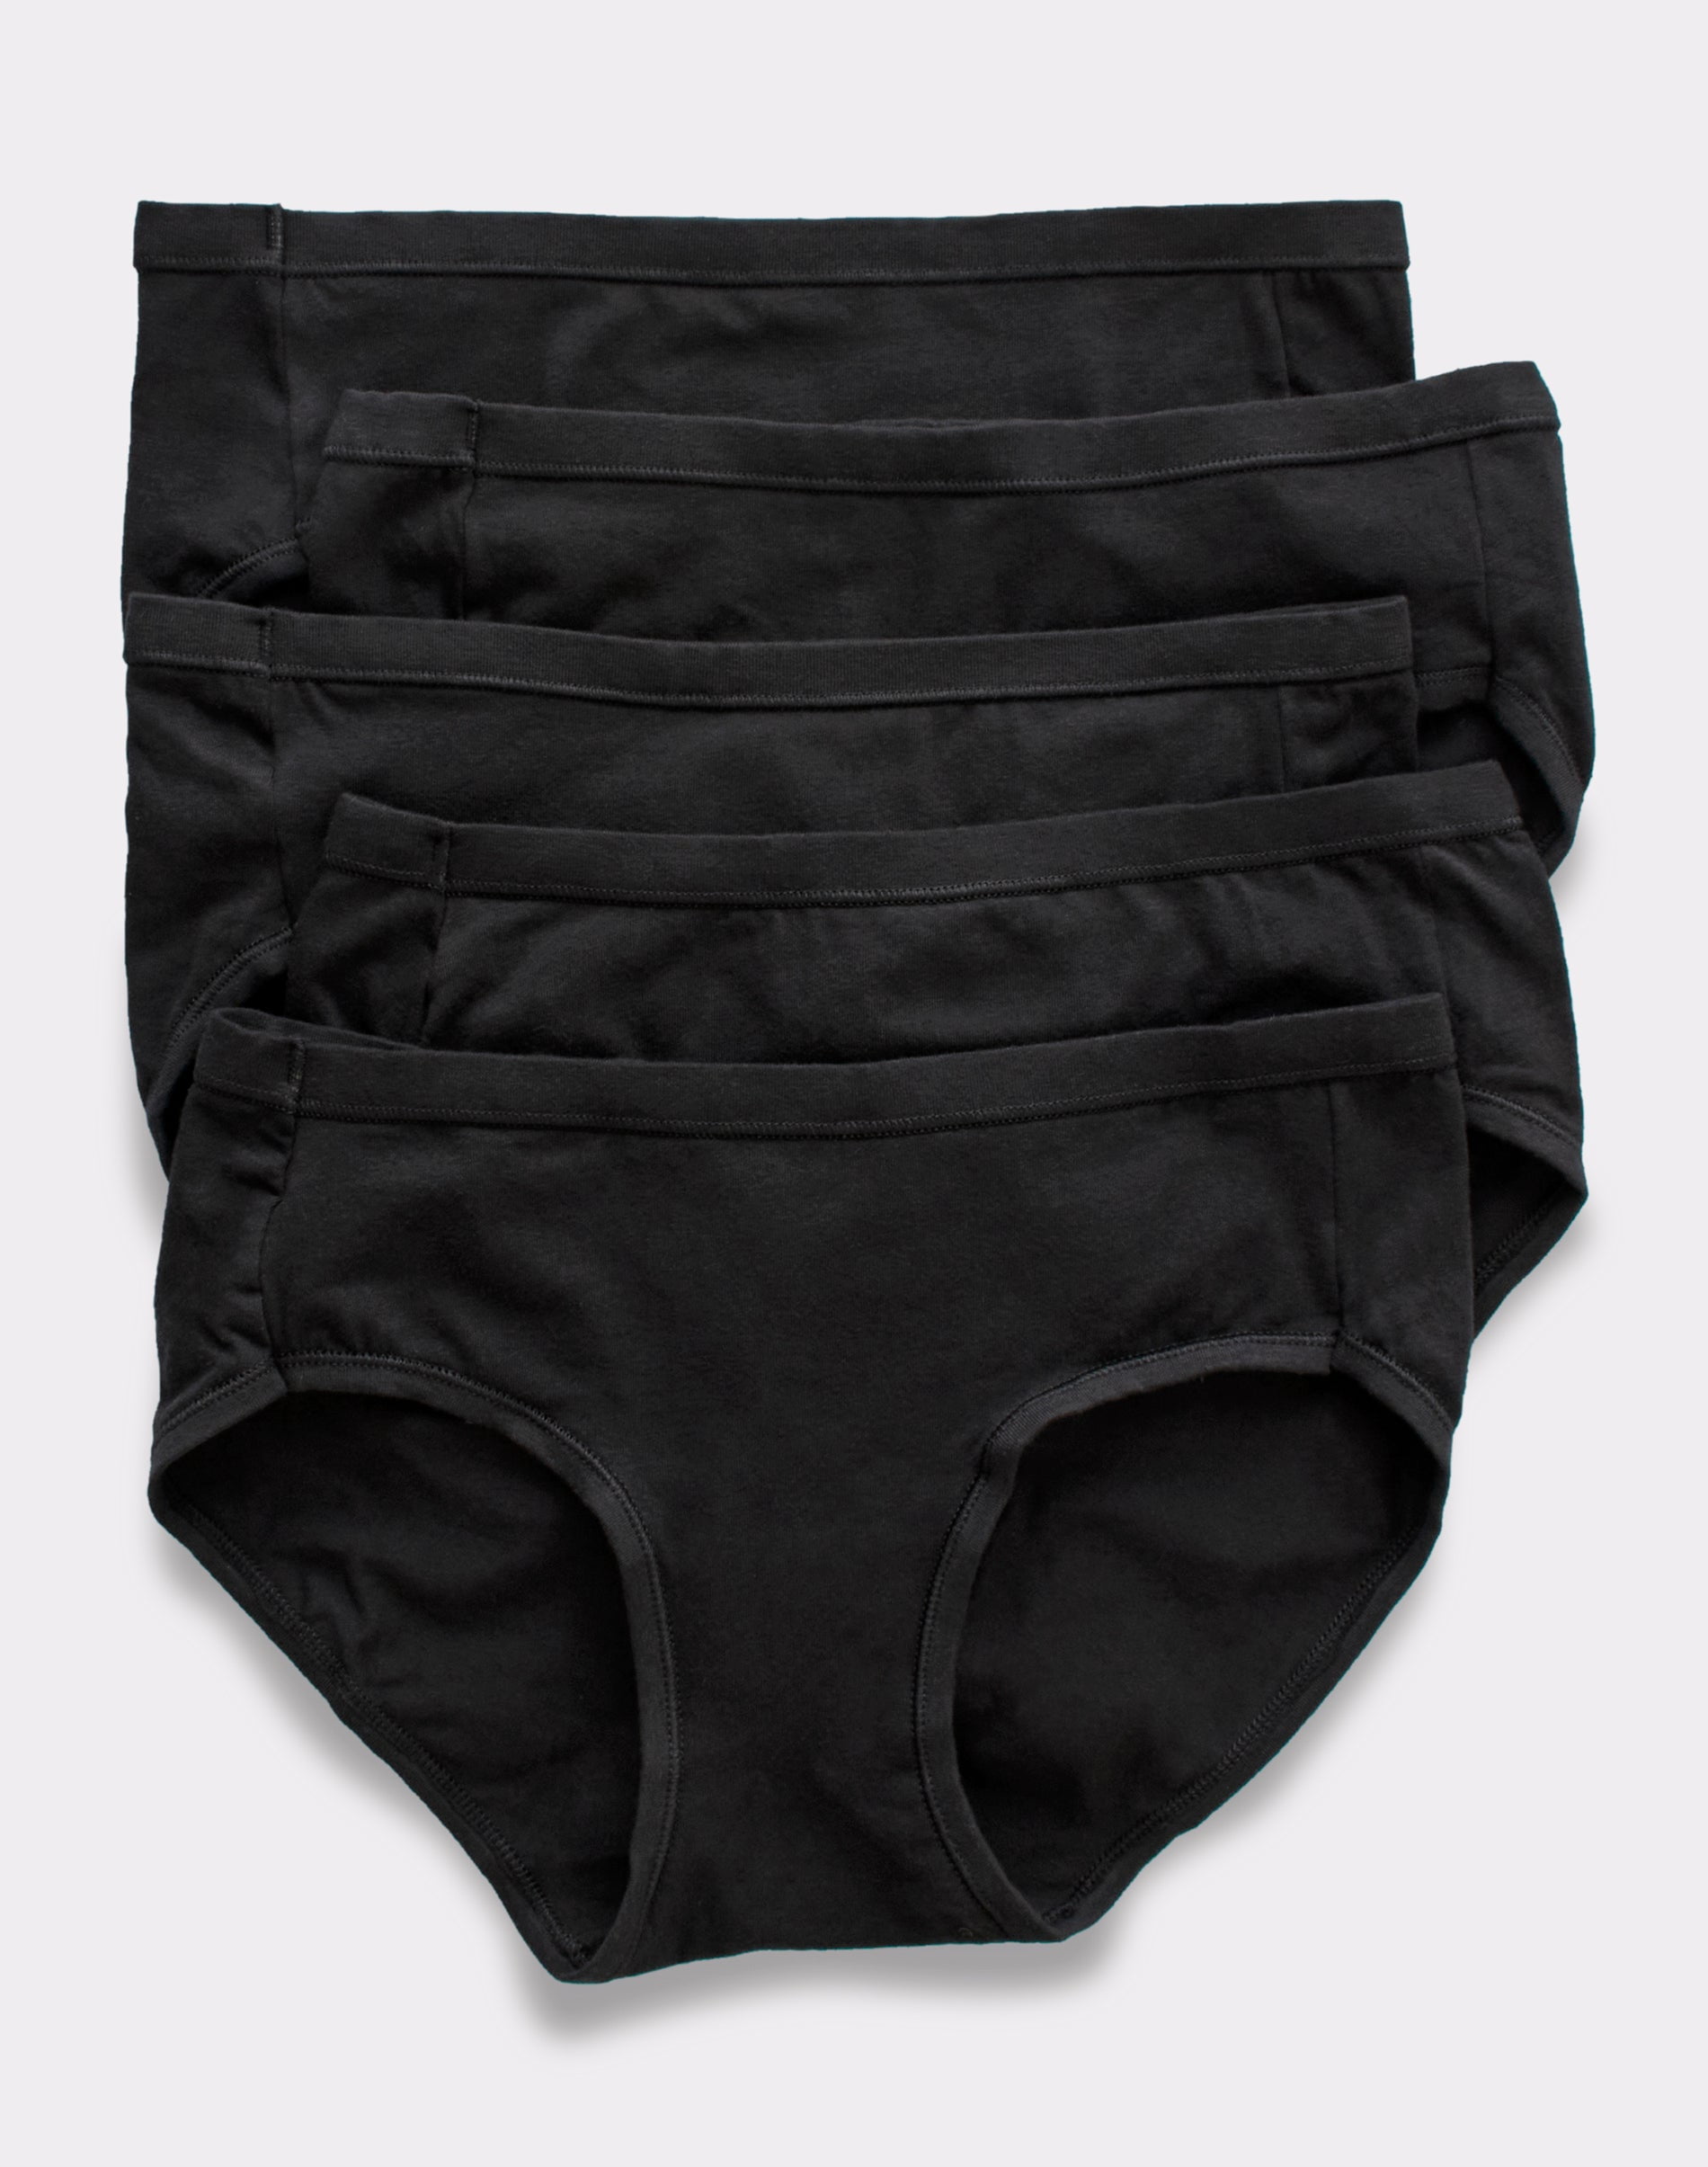 Hanes - Black Cotton Full Brief Underwear-snazzy